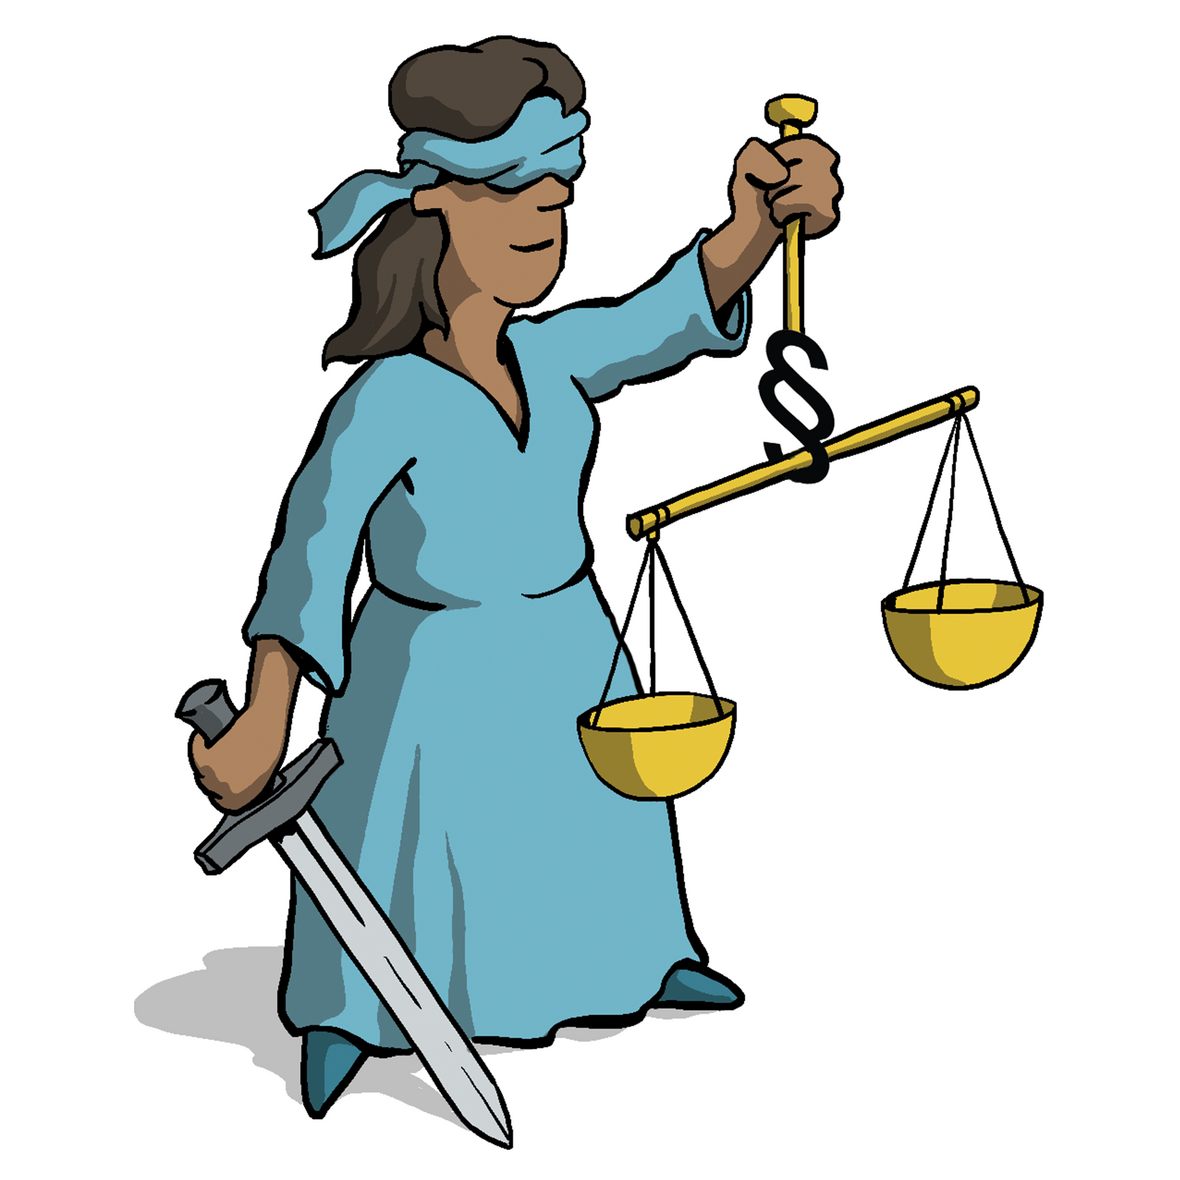 Man sieht eine Frau, die man auch Justitia nennt und die Justiz symbolisiert. Sie hat die Augen verbunden und hält eine Waage in der Hand. 